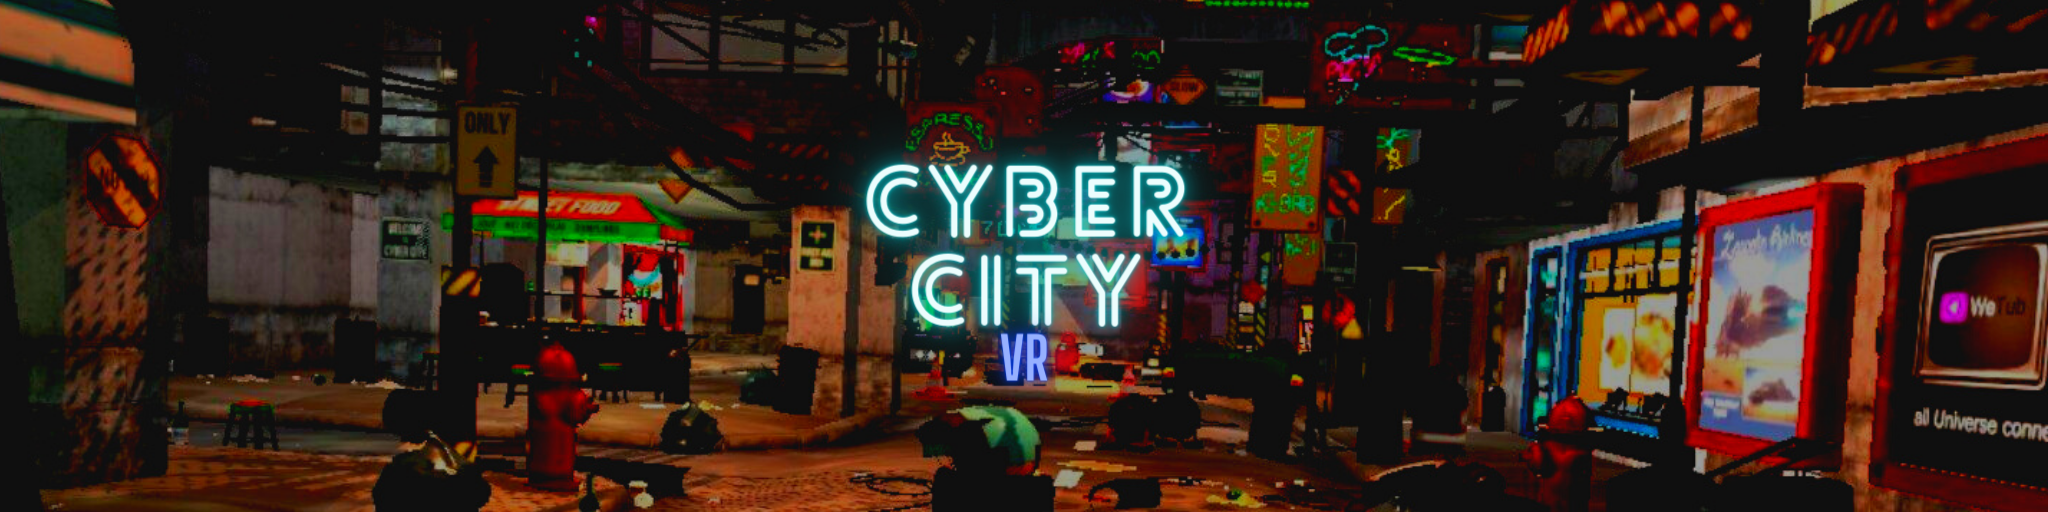 Cyber City VR